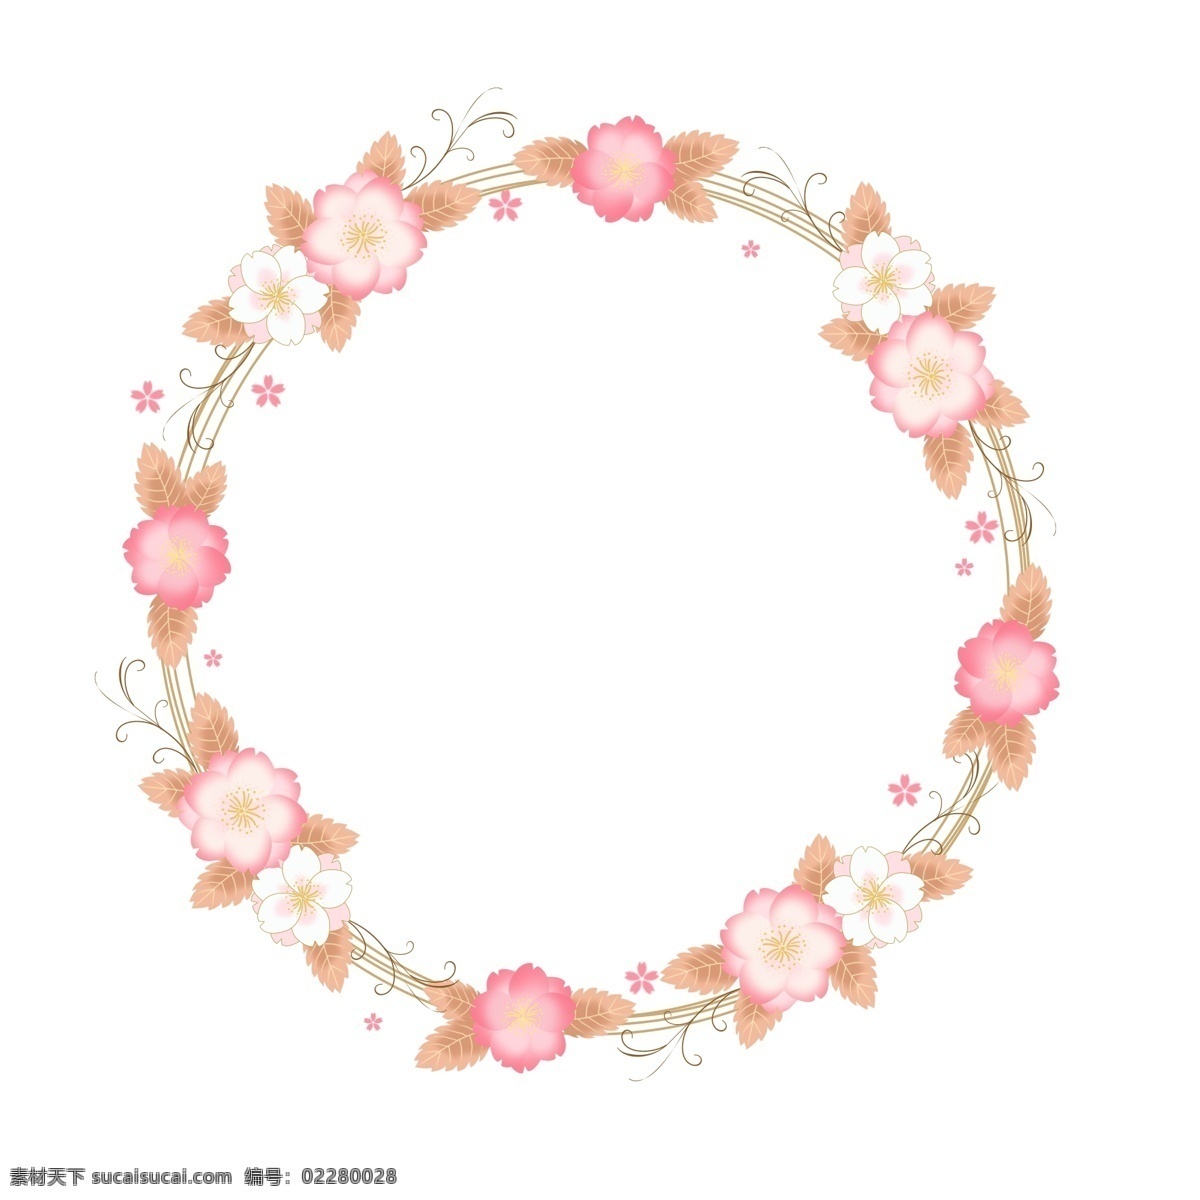 花 卡通 樱花 浪漫 欧式 花卉 边框 粉色 手绘 植物 樱花边框